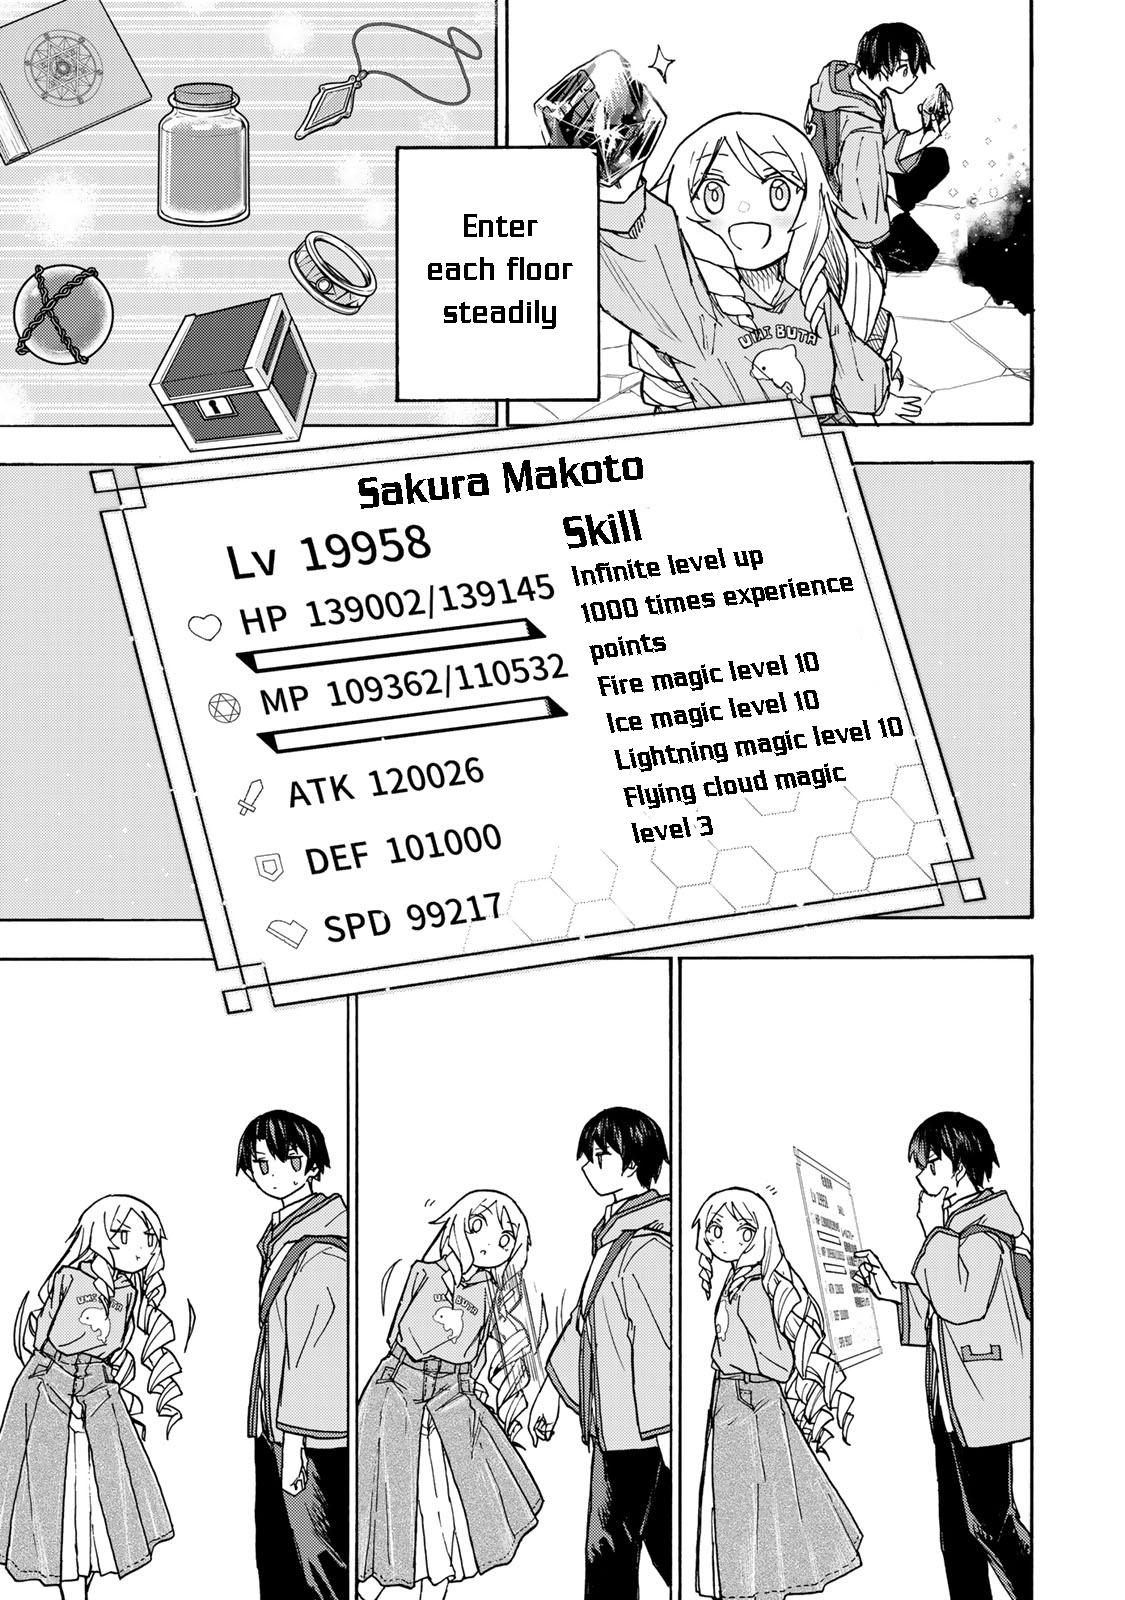 Saikyou de Saisoku no Mugen Level Up Ch.6 Page 10 - Mangago